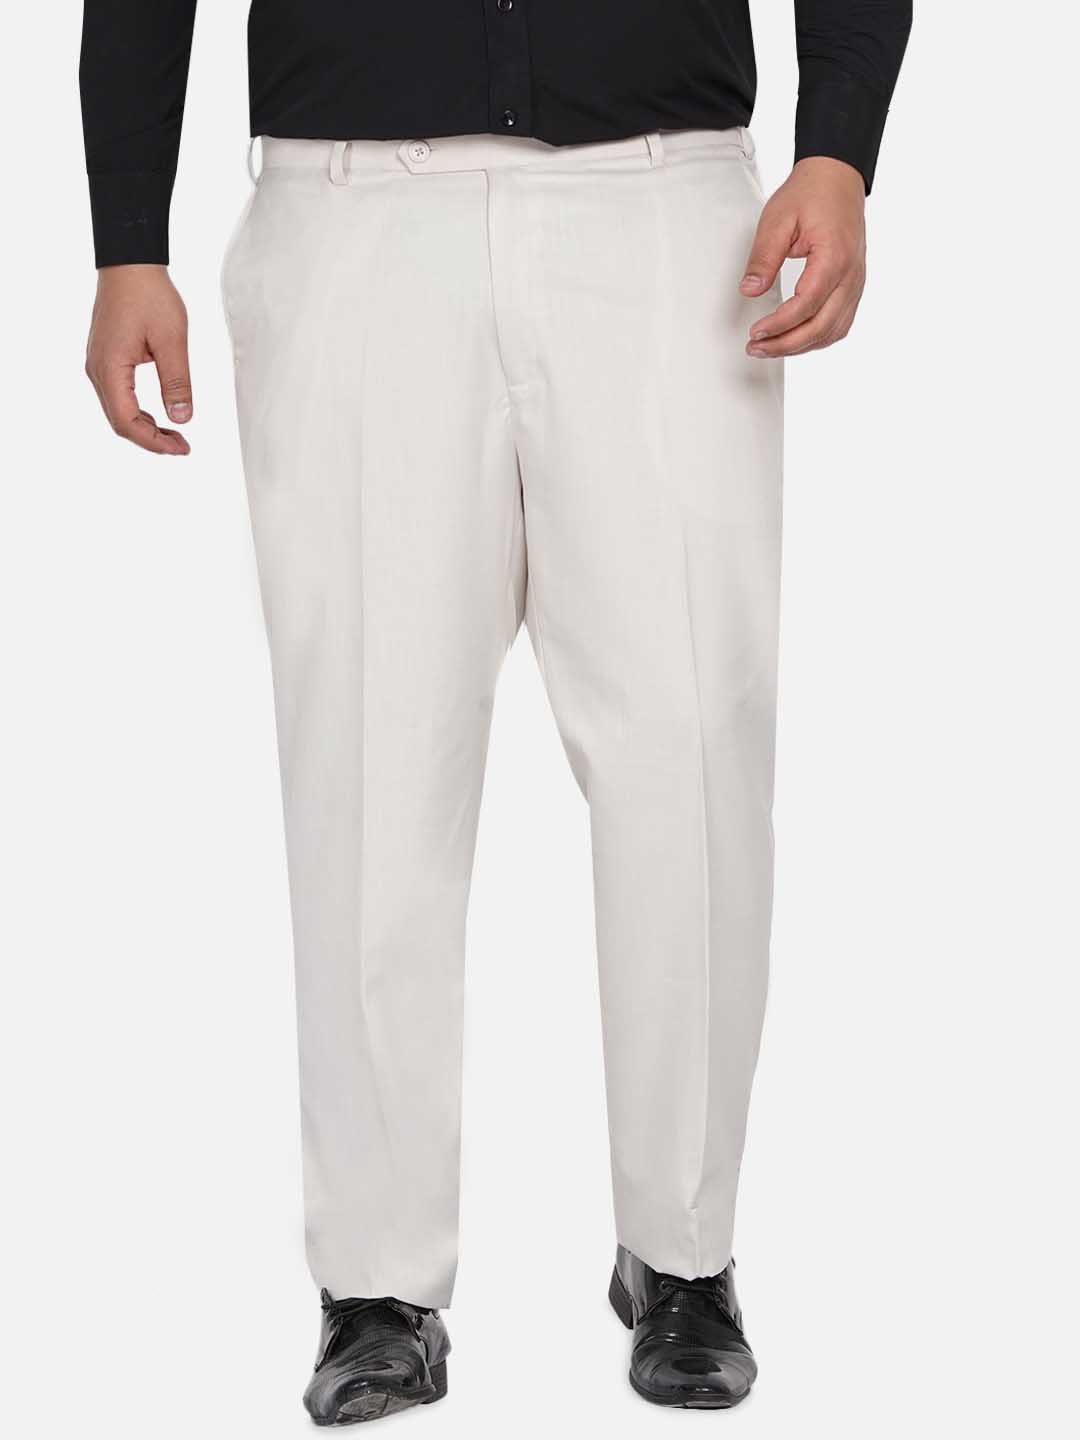 bottomwear/trousers/JPTR22010D/jptr22010d-1.jpg